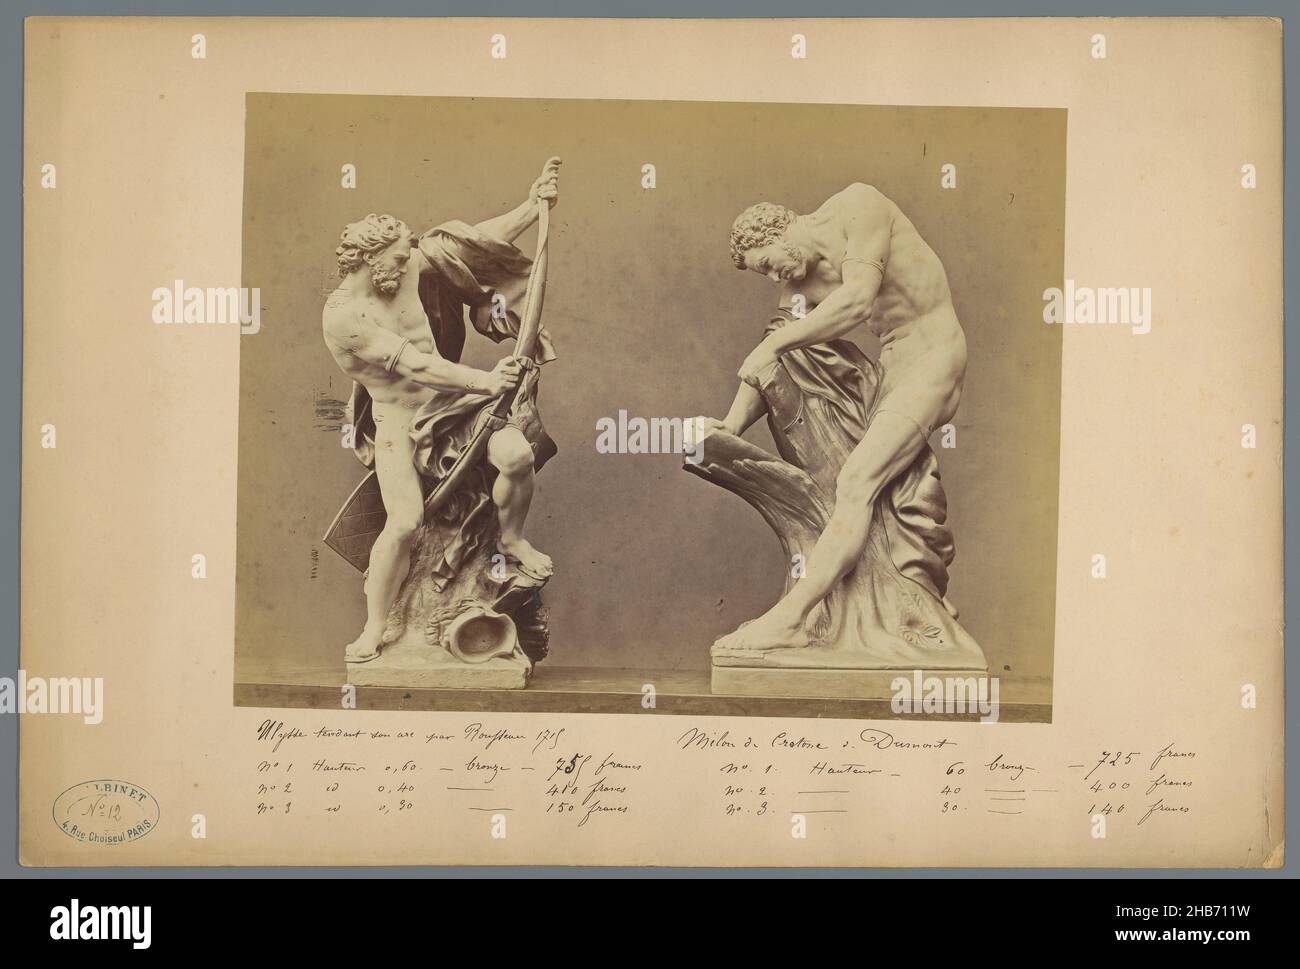 Zwei Skulpturen, links: Eine Reproduktion einer Skulptur des Odysseus, rechts: Eine Reproduktion einer Skulptur von Milo von Croton von Edme Dumont., anonym (auf Objekt erwähnt), Europa, c. 1875 - c. 1900, Karton, Albumin-Print, Höhe 223 mm × Breite 297 mm Stockfoto